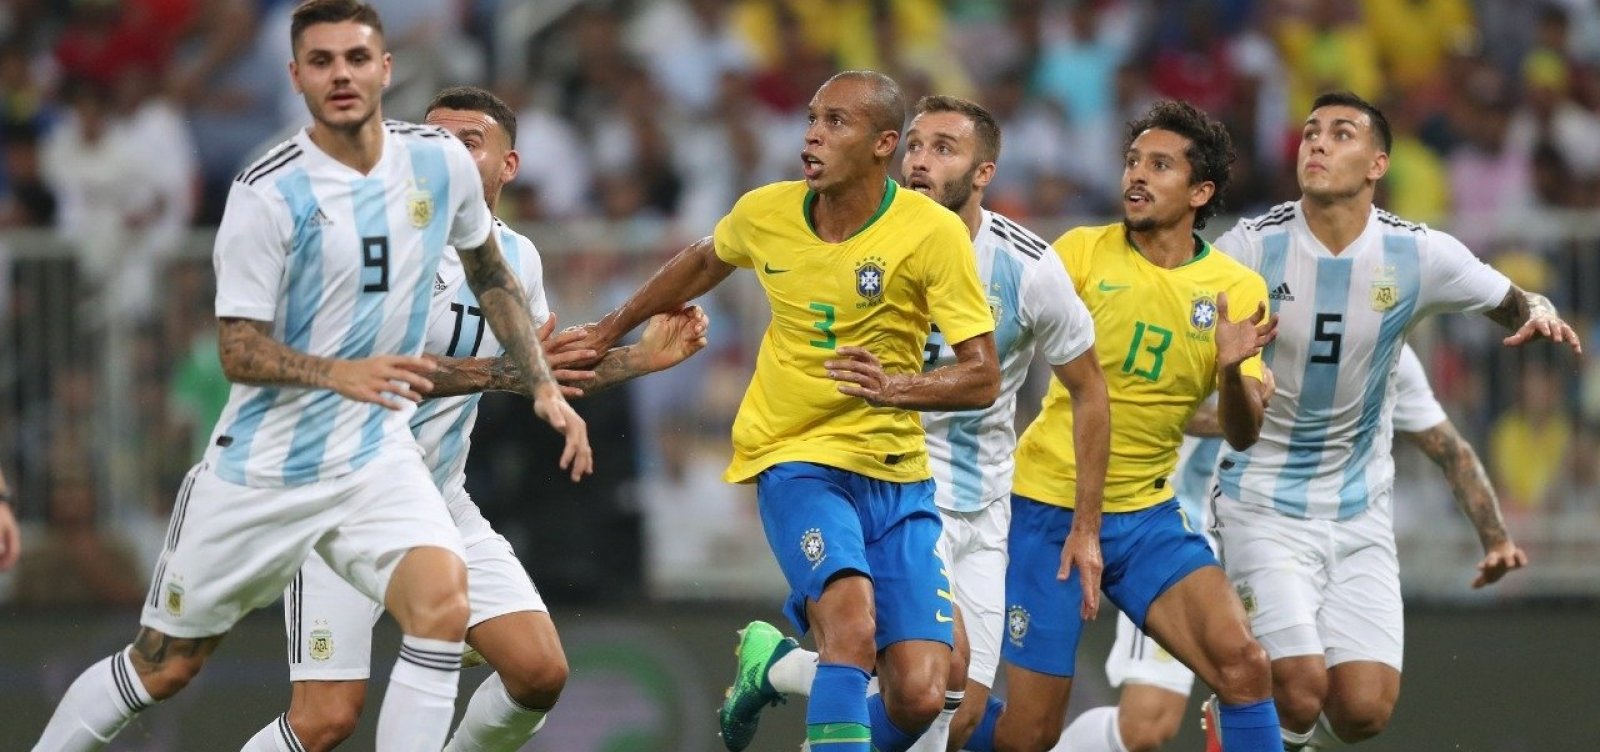 Brasil vence Argentina com gol nos acréscimos do segundo tempo